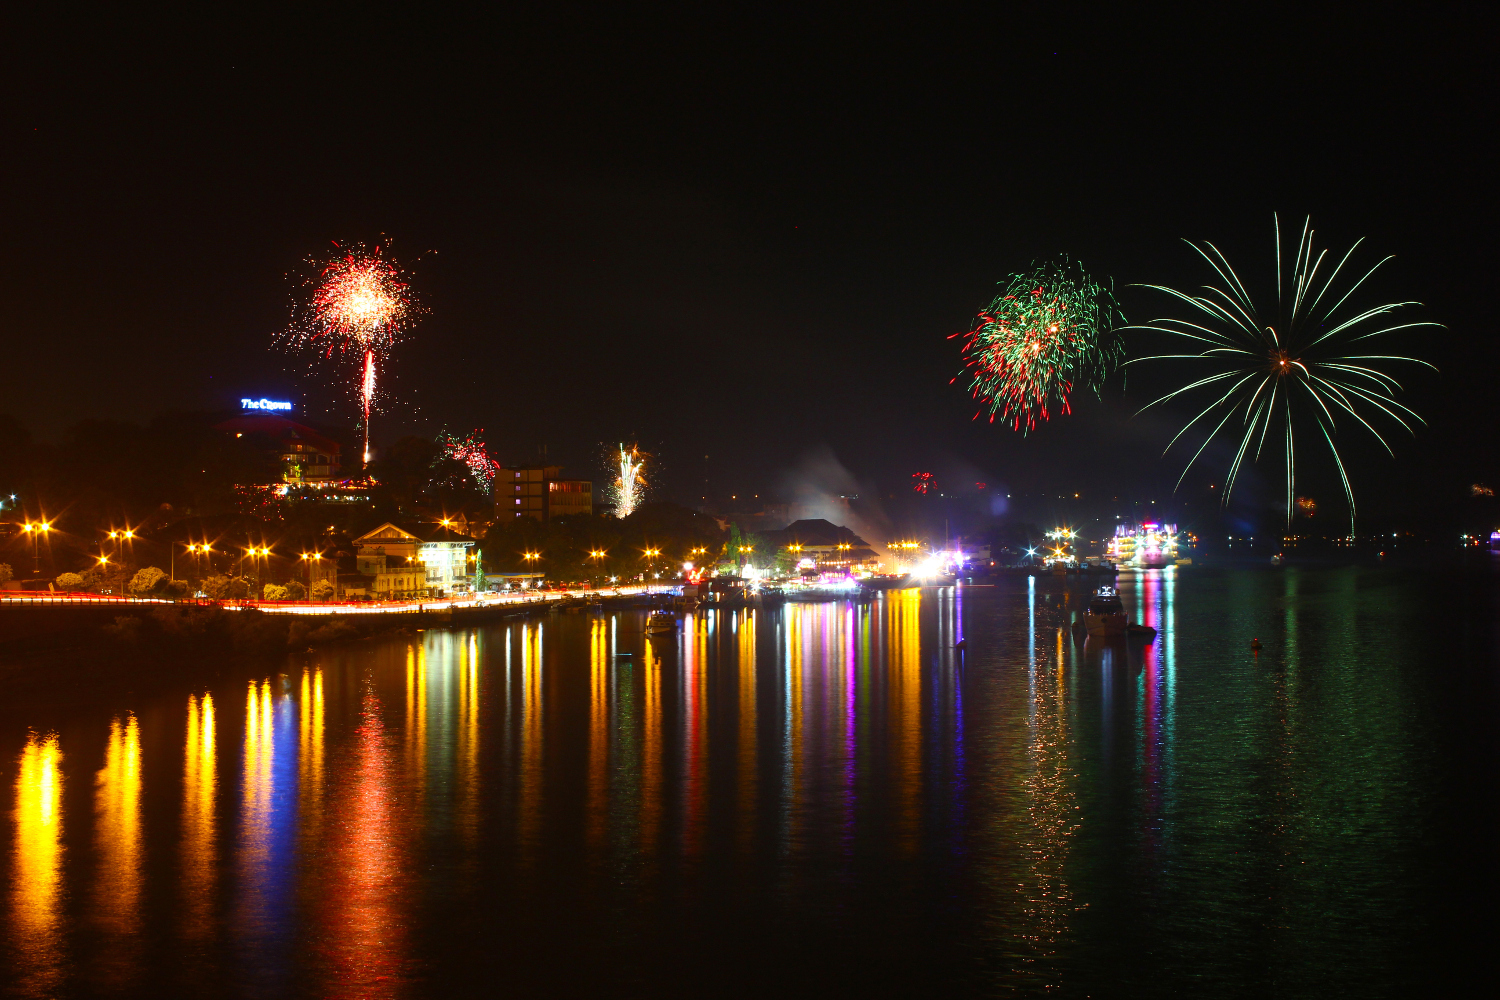 New Year's Eve fireworks in Panaji, Goa. Image by riteshsaini / Getty